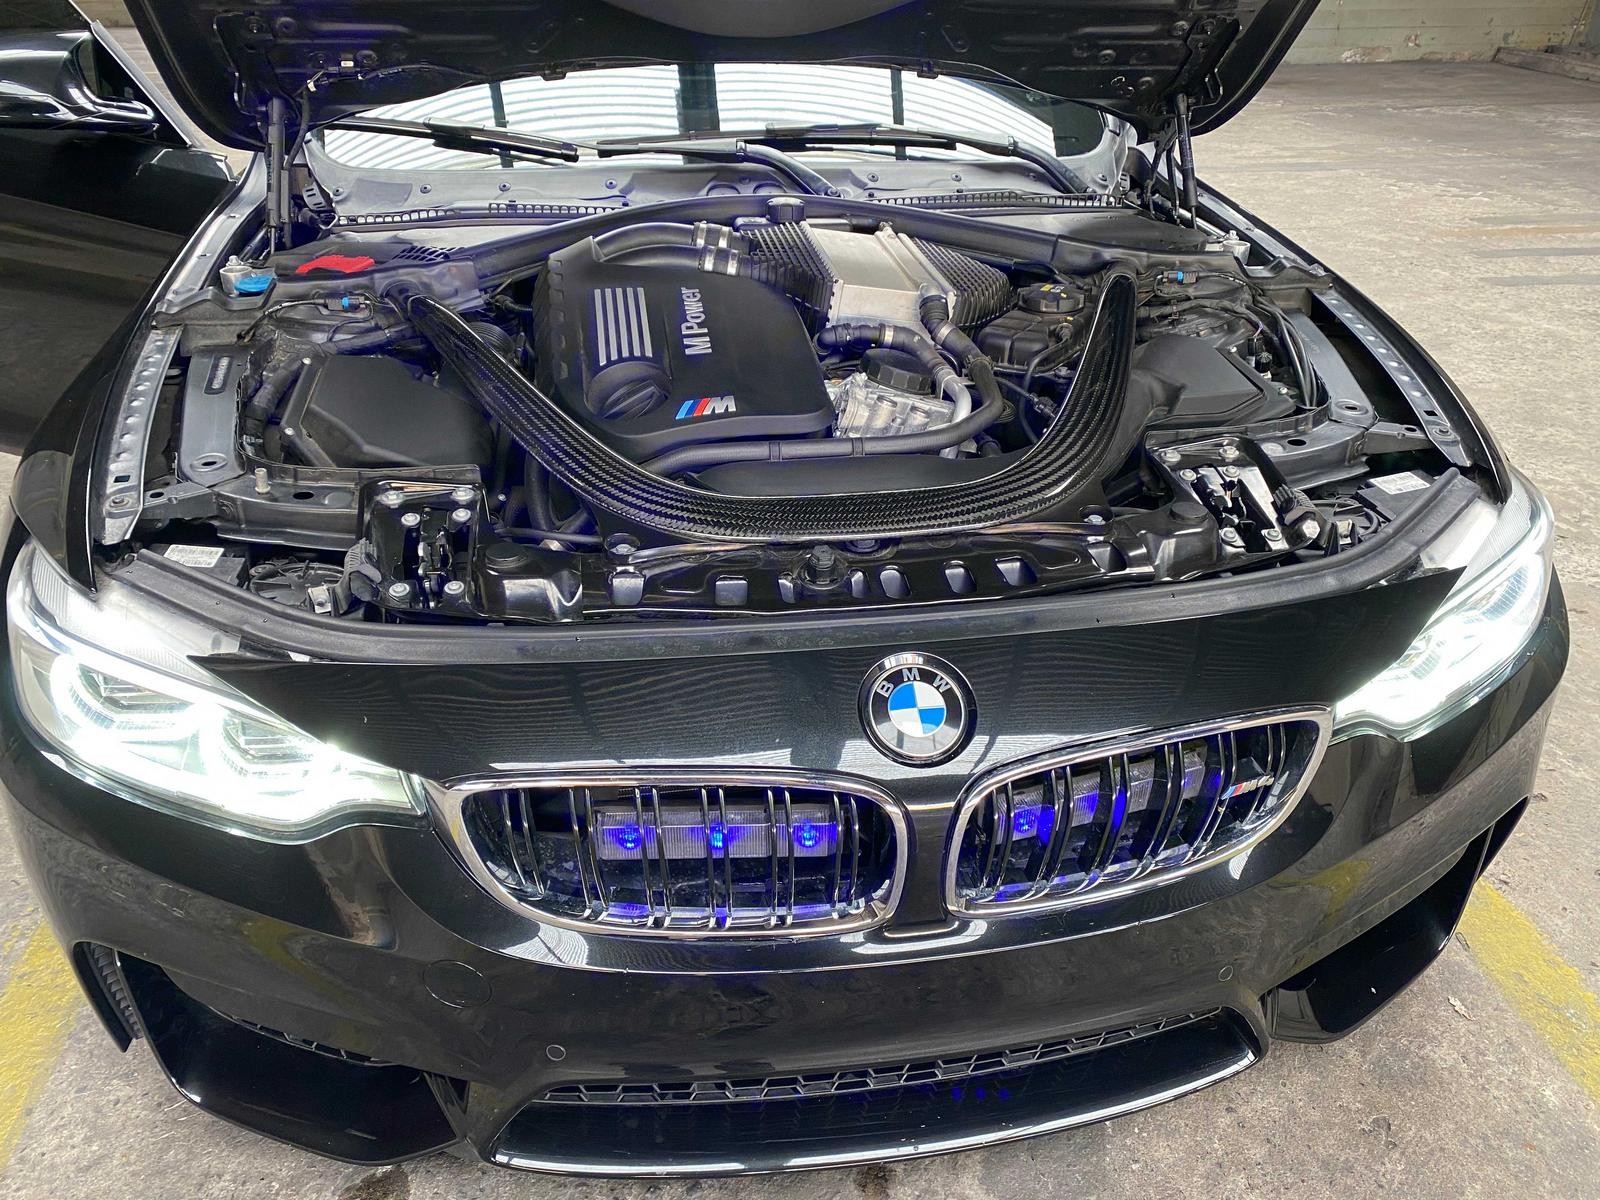 BMW M4 Coupe de vanzare - BMW M4 Coupe de vanzare